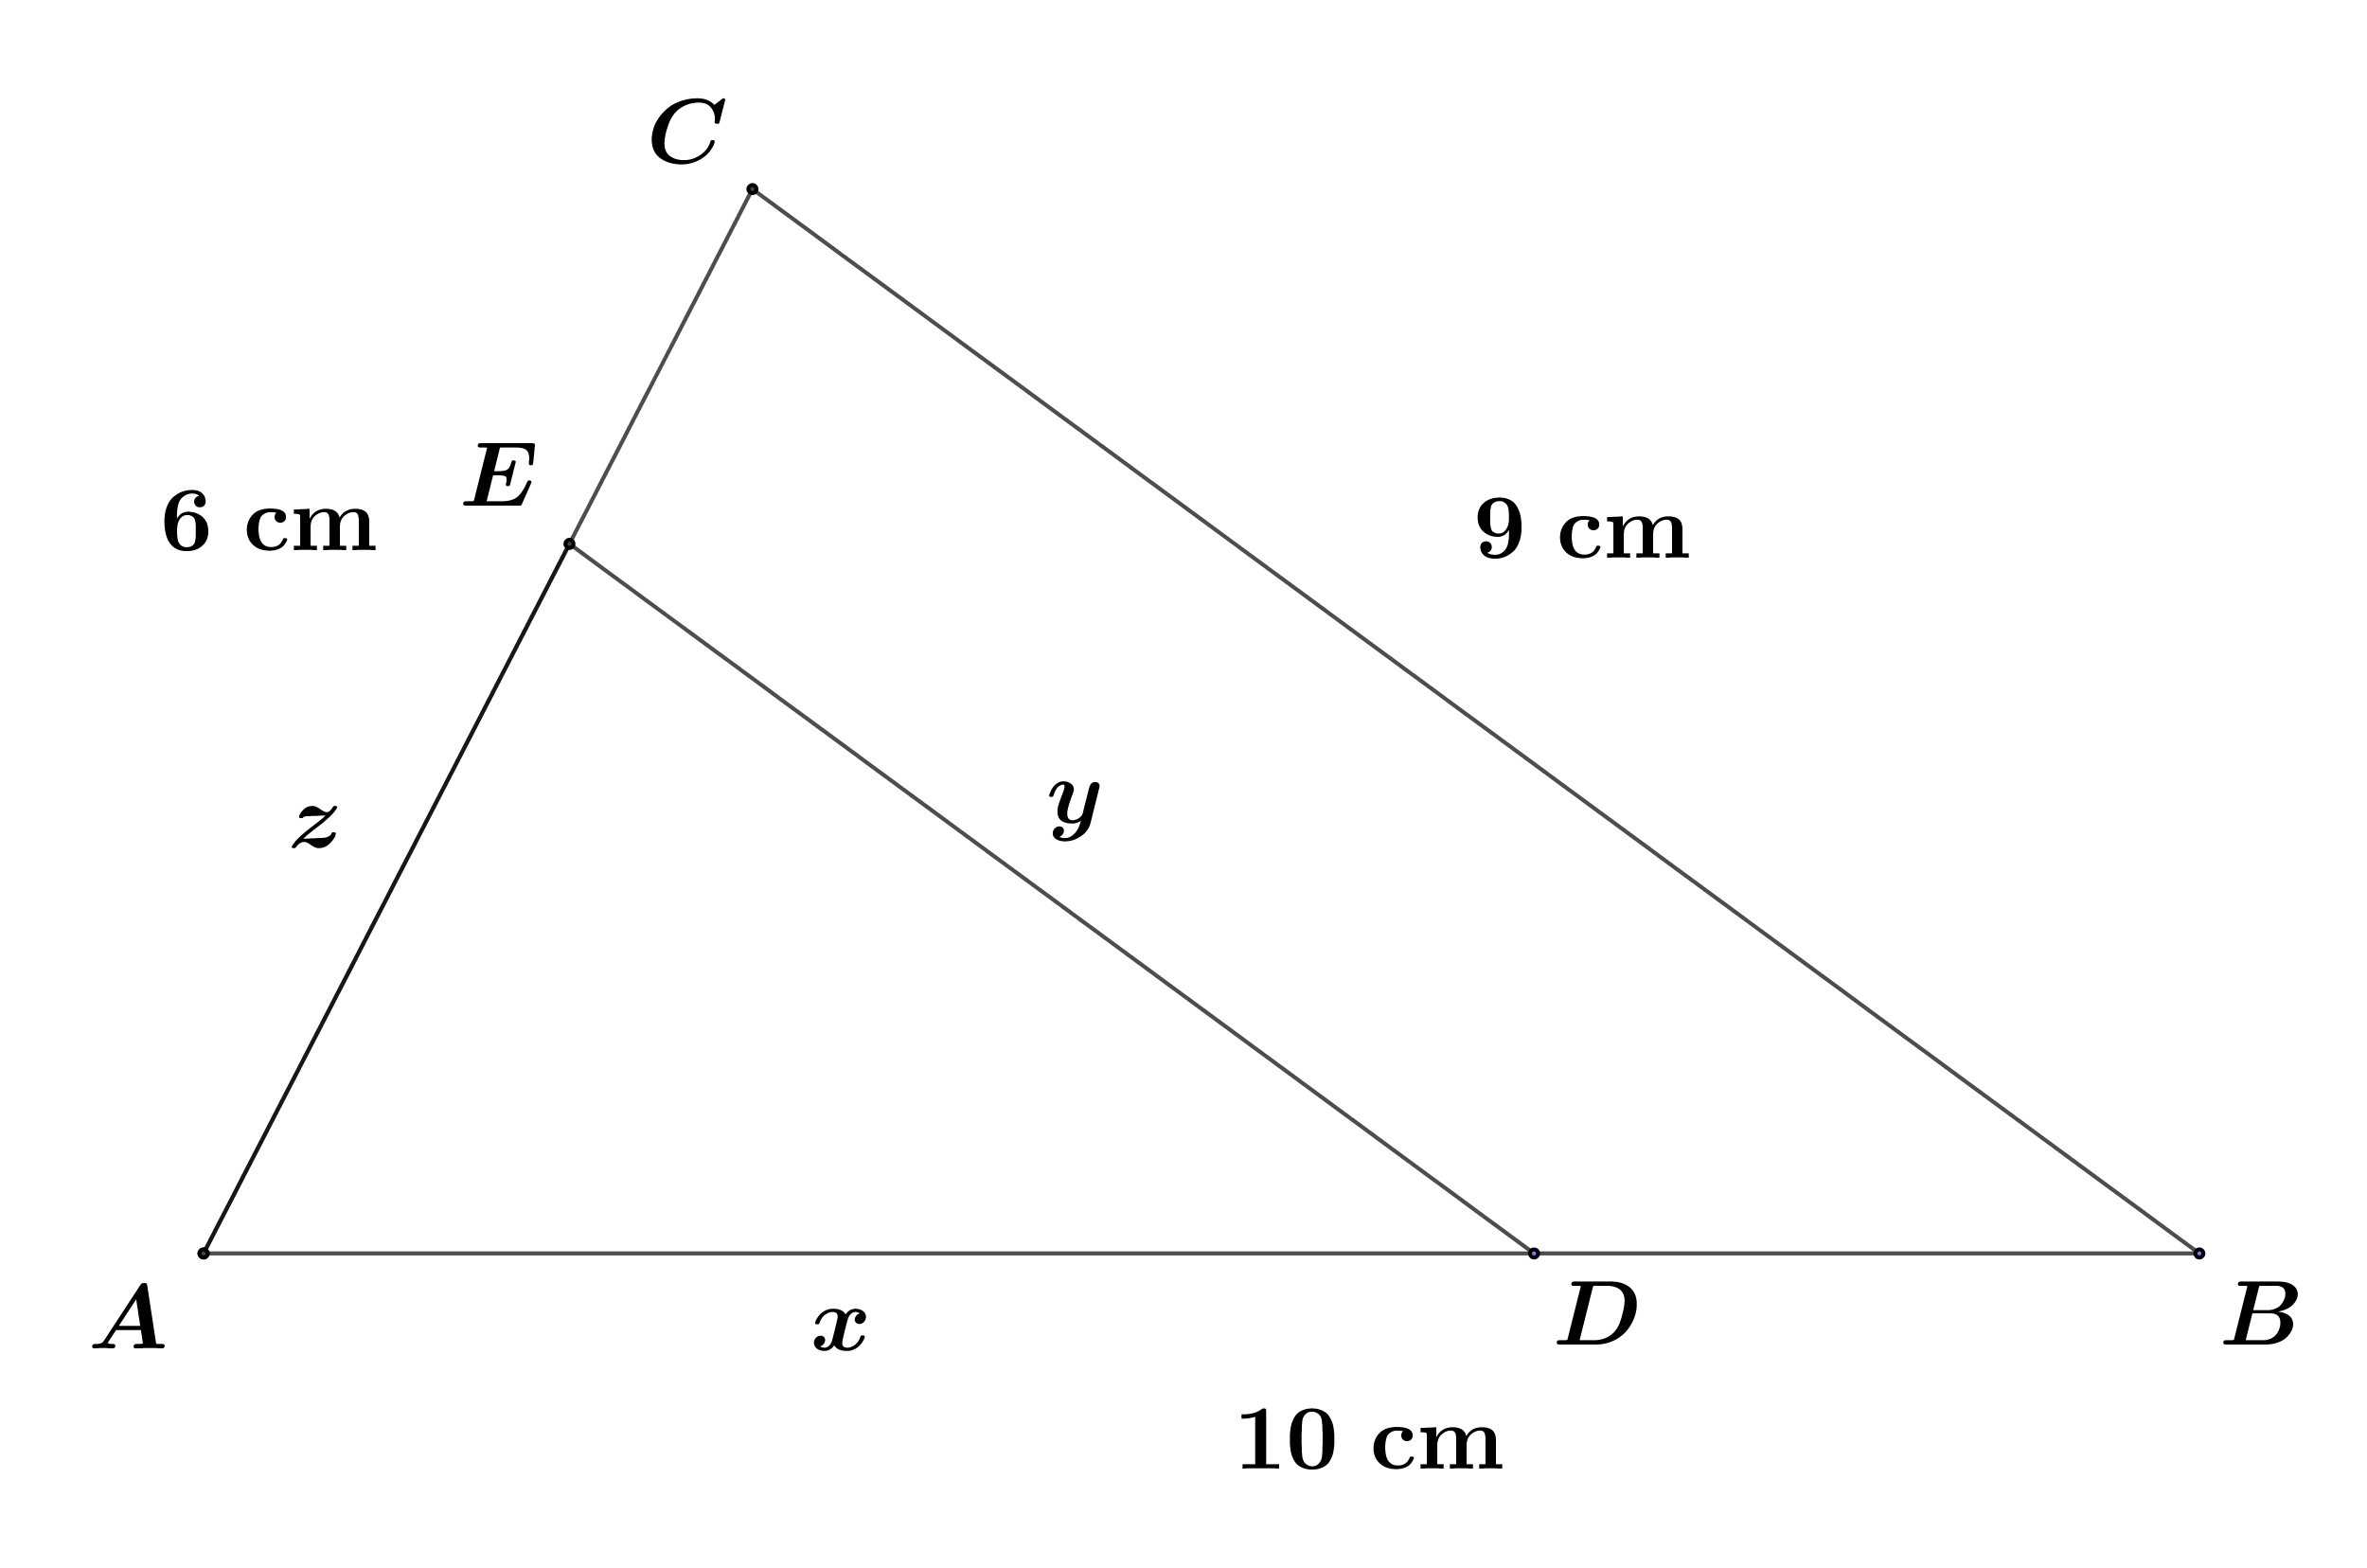 Slika prikazuje dva slična trokuta. Istaknute su poznate duljine i one koje treba tek izračunati.